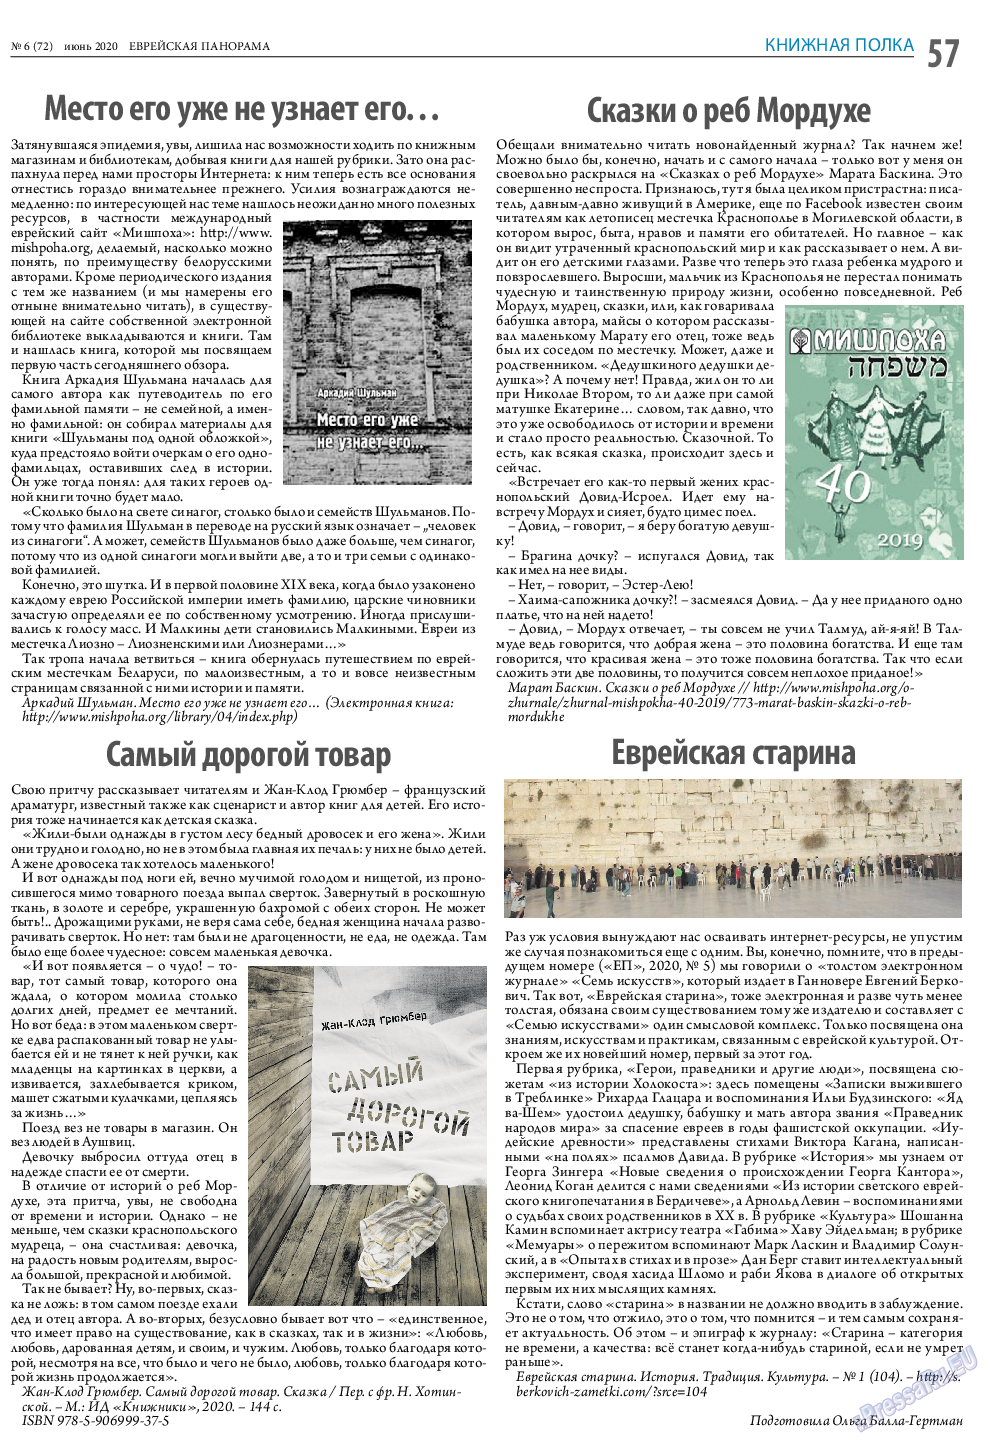 Еврейская панорама (газета). 2020 год, номер 6, стр. 57